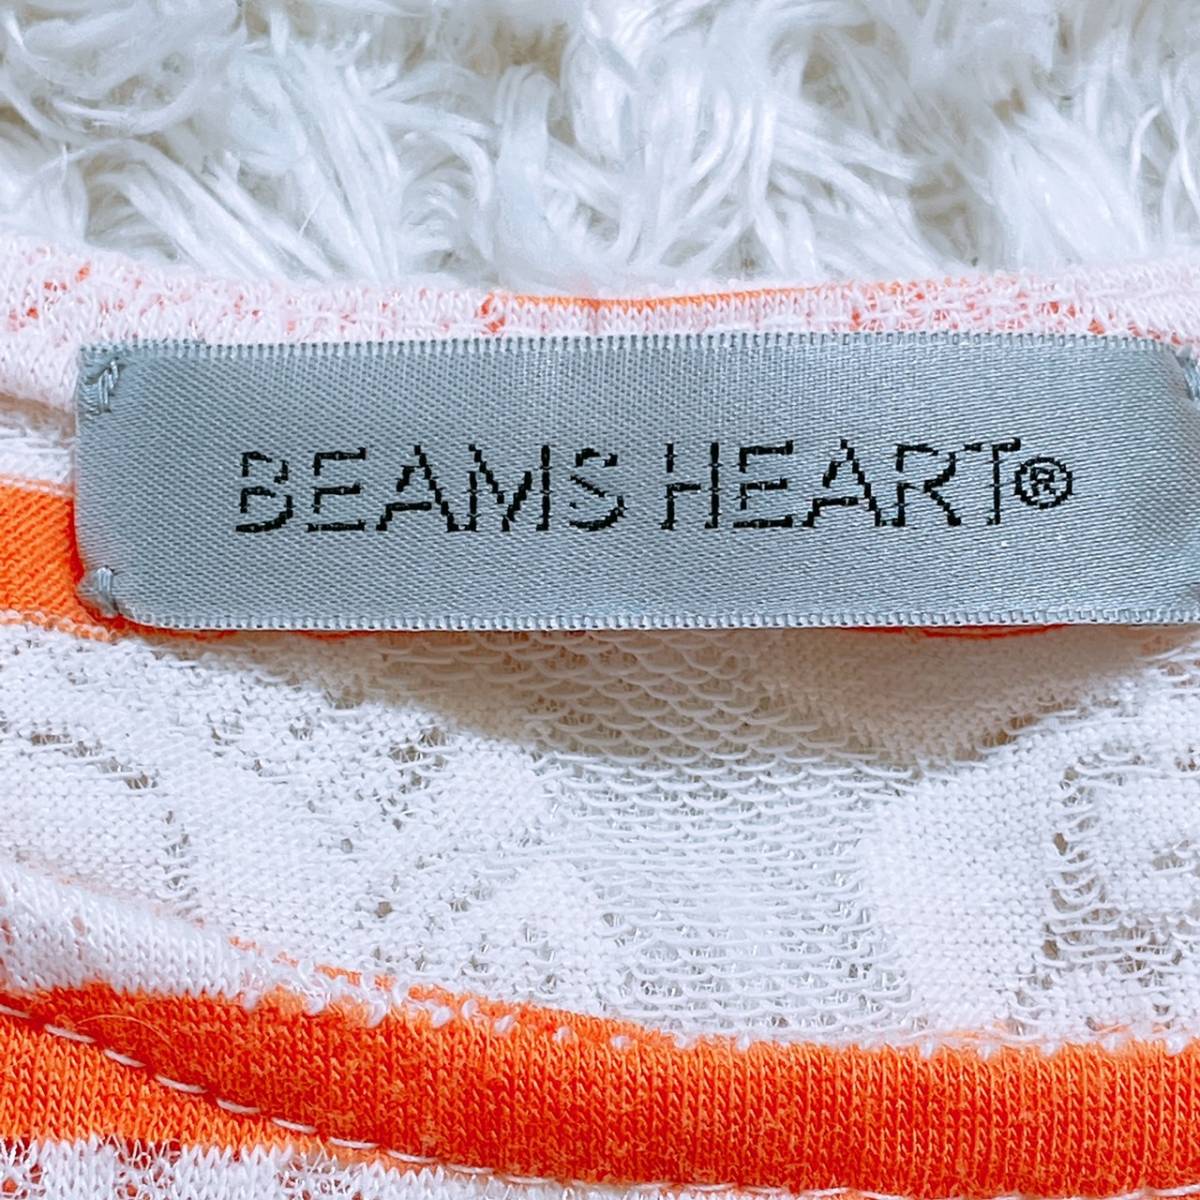 【20460】 BEAMS HEART ビームス ハート トップス シャツ 半袖シャツ オーバーサイズ 丸ネック レース ボーダー オレンジ ホワイト M相当